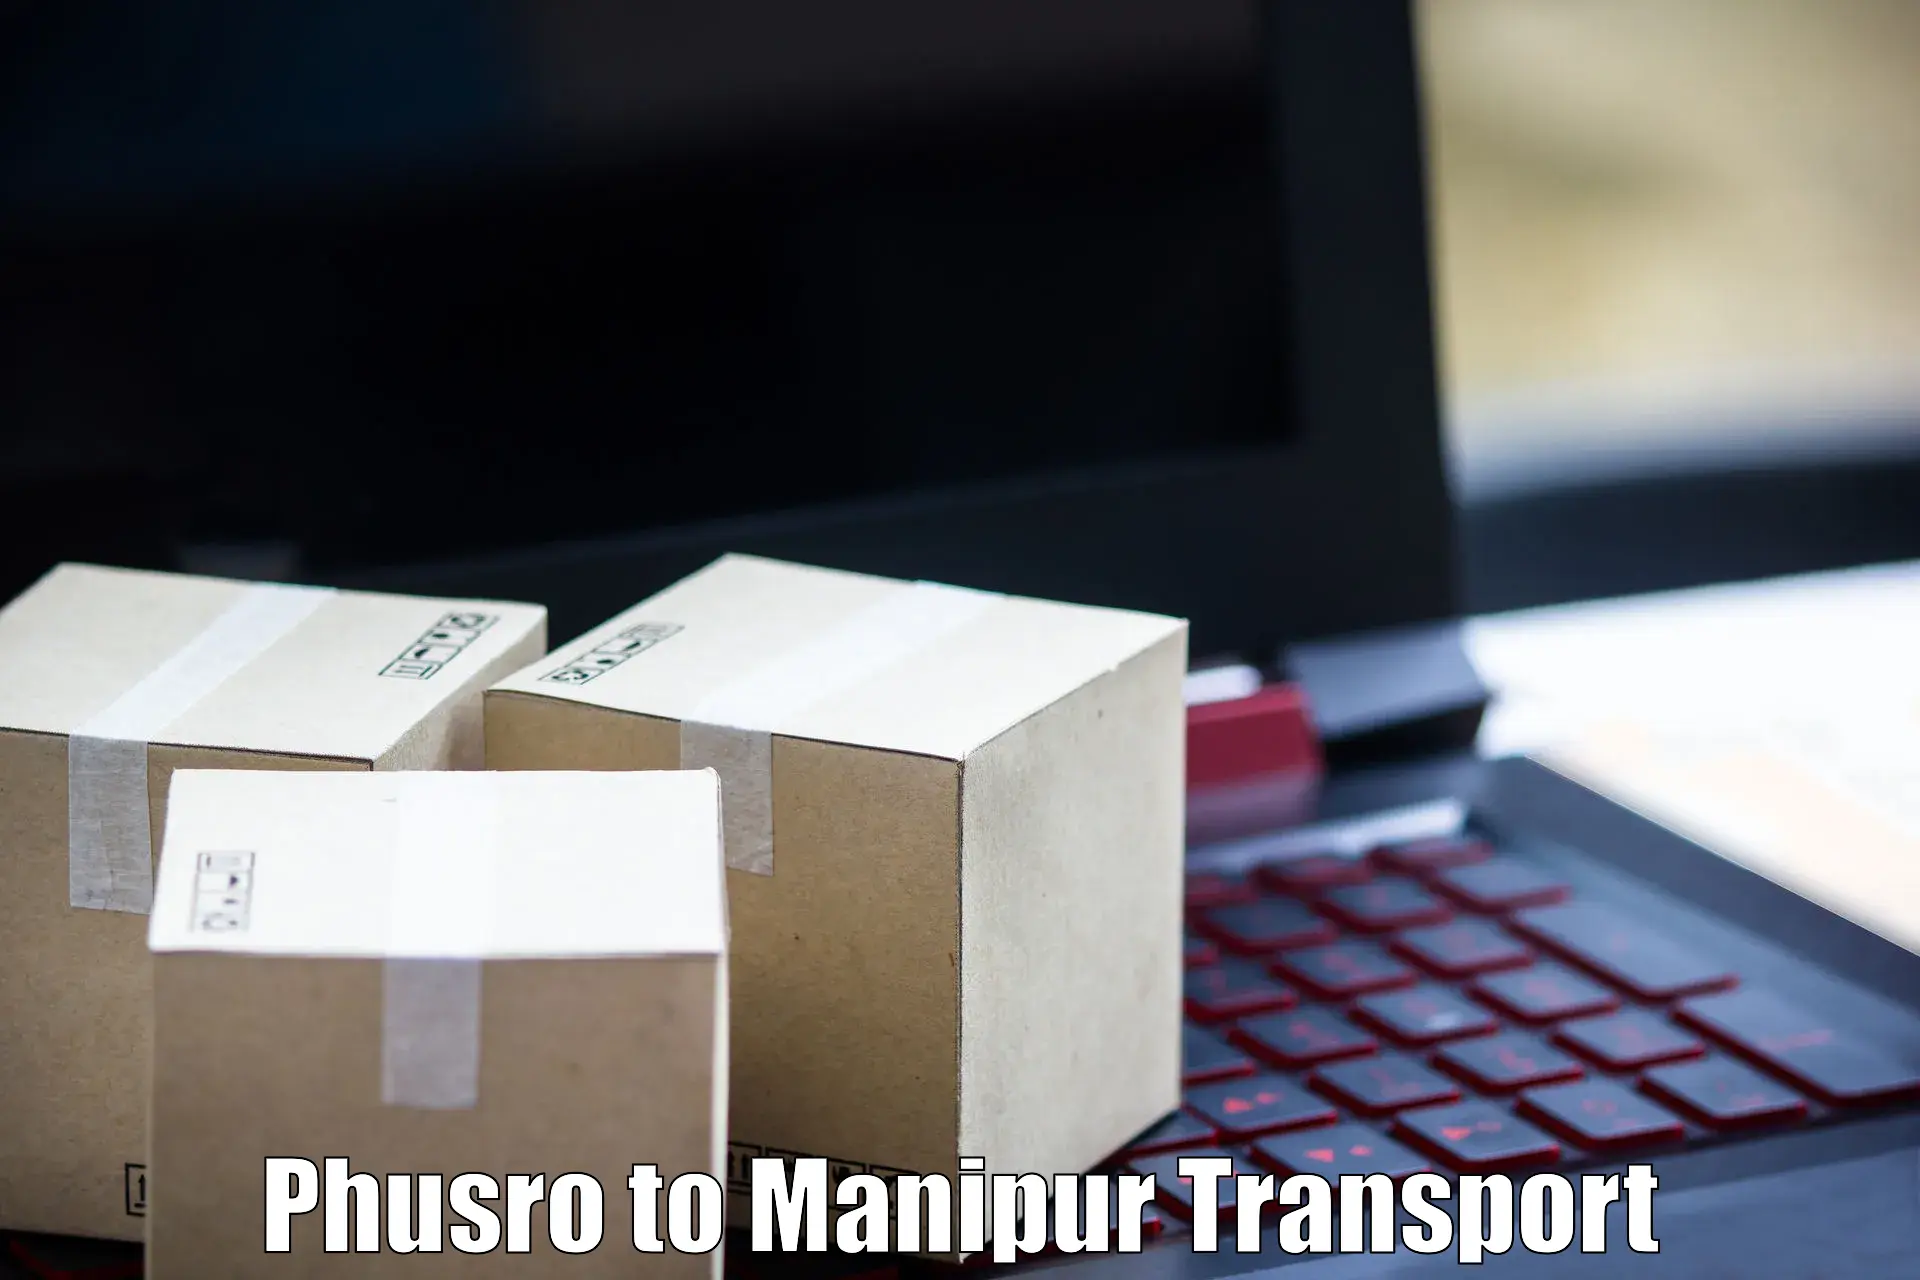 Furniture transport service Phusro to Manipur